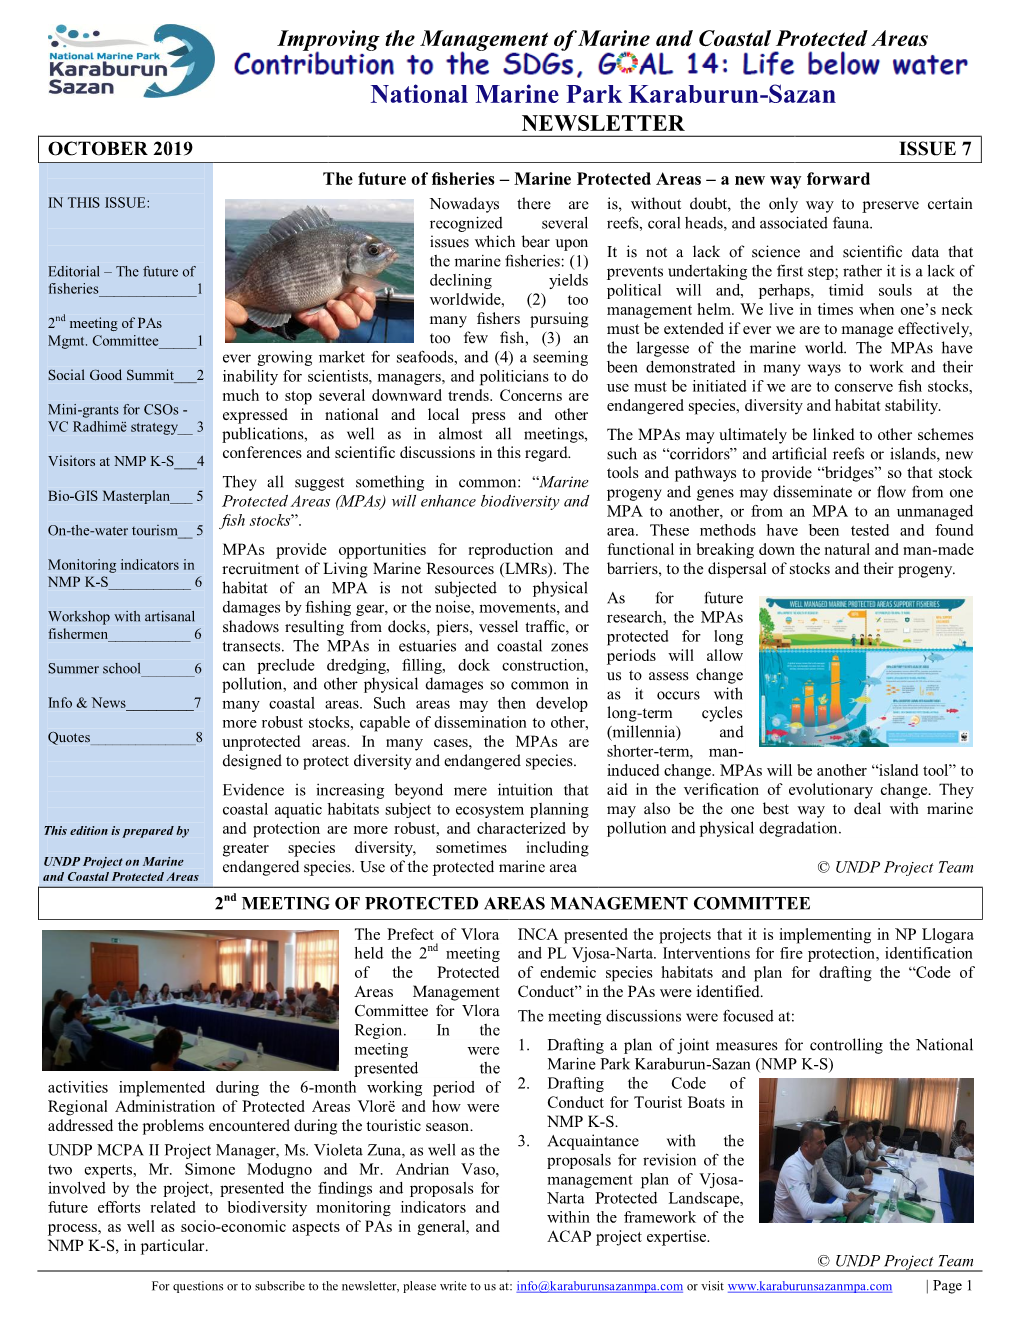 National Marine Park Karaburun-Sazan NEWSLETTER OCTOBER 2019 ISSUE 7